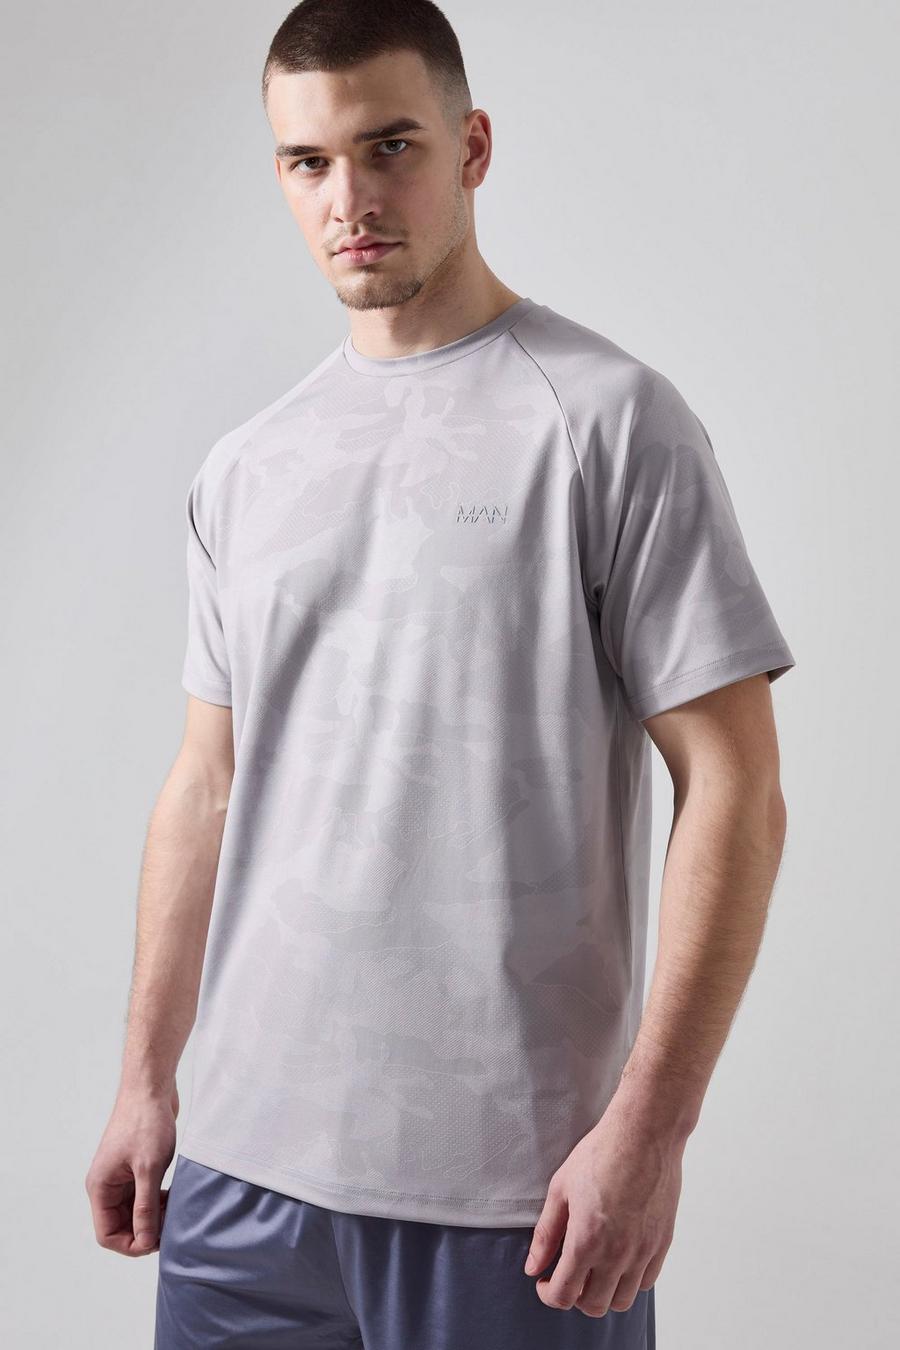 Grey Tall Man Active Camo Raglan Performance T-shirt image number 1